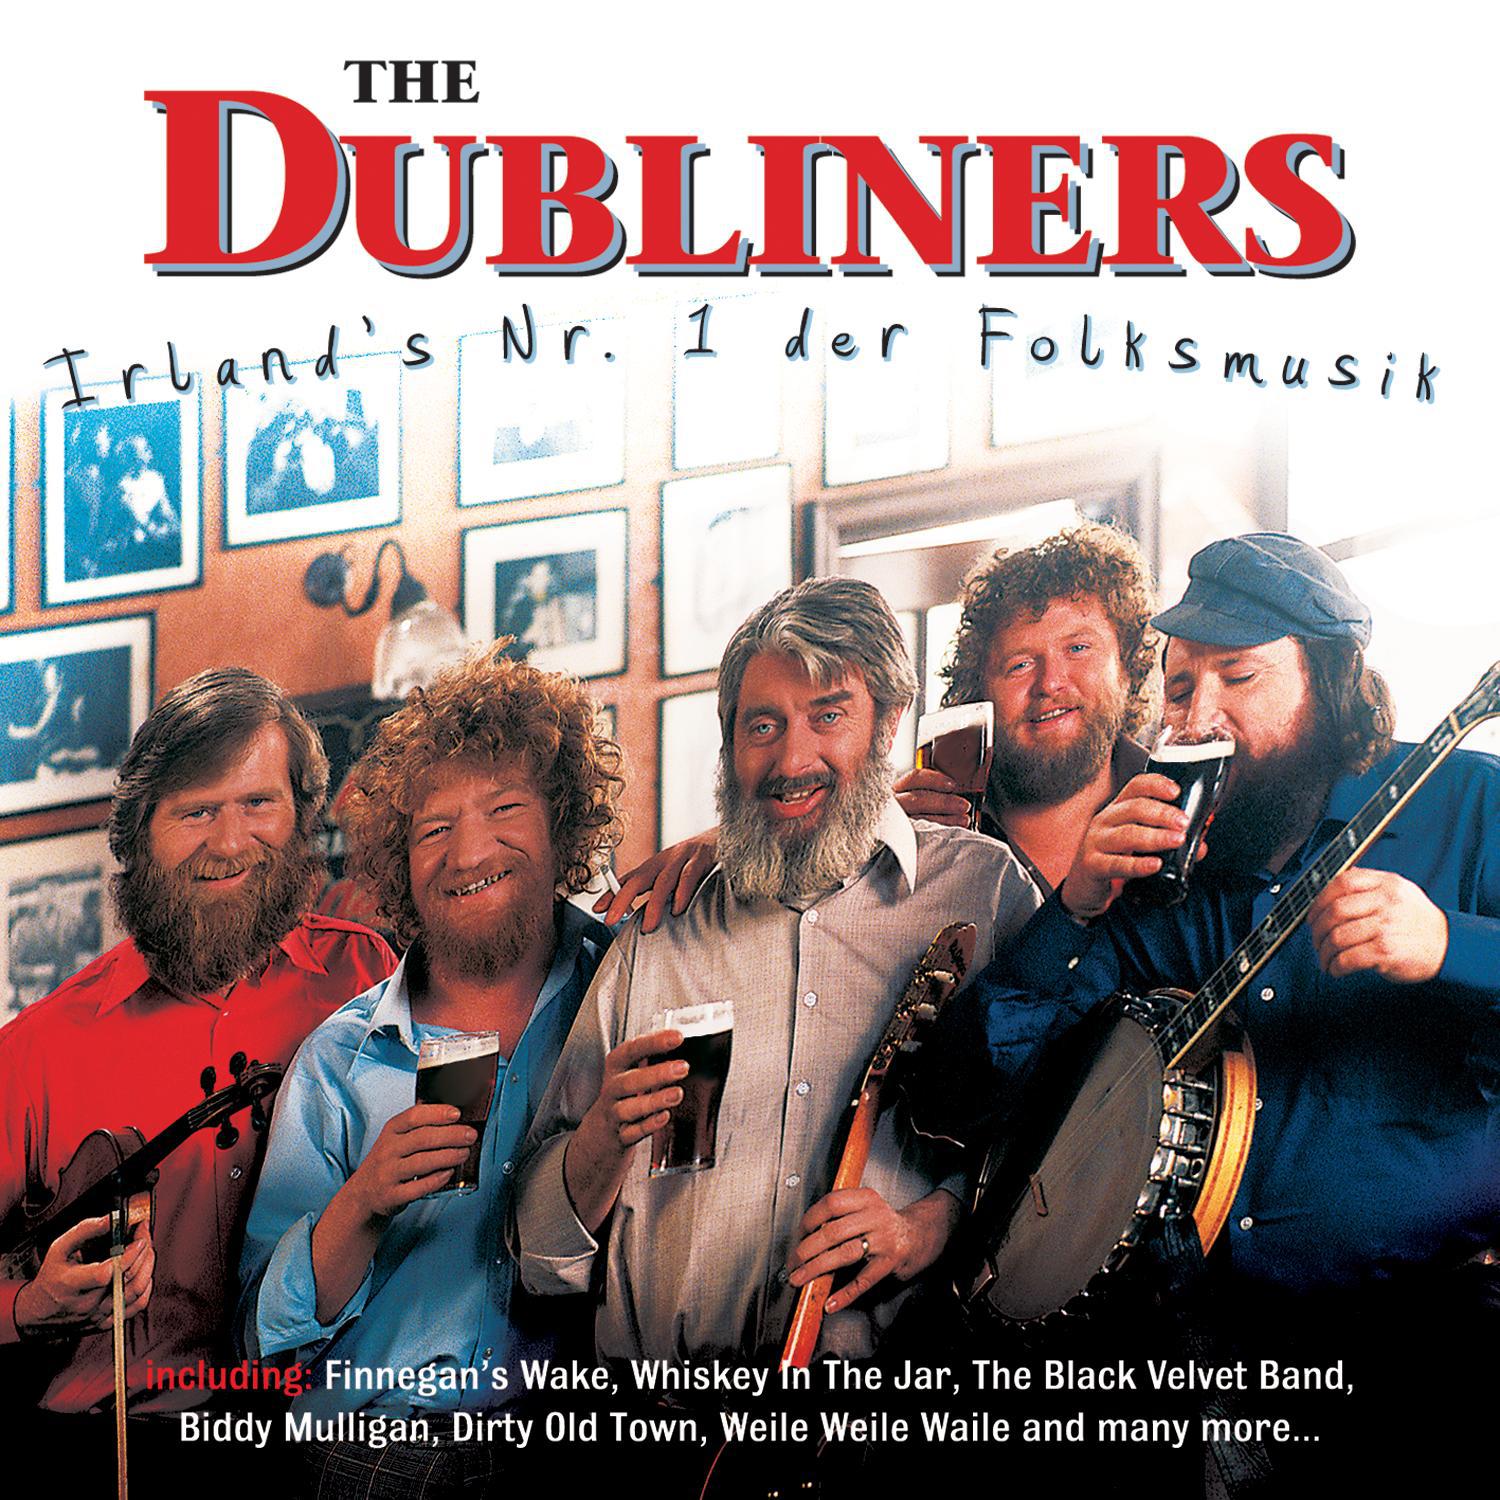 Irland's Nr. 1 der Folksmusik